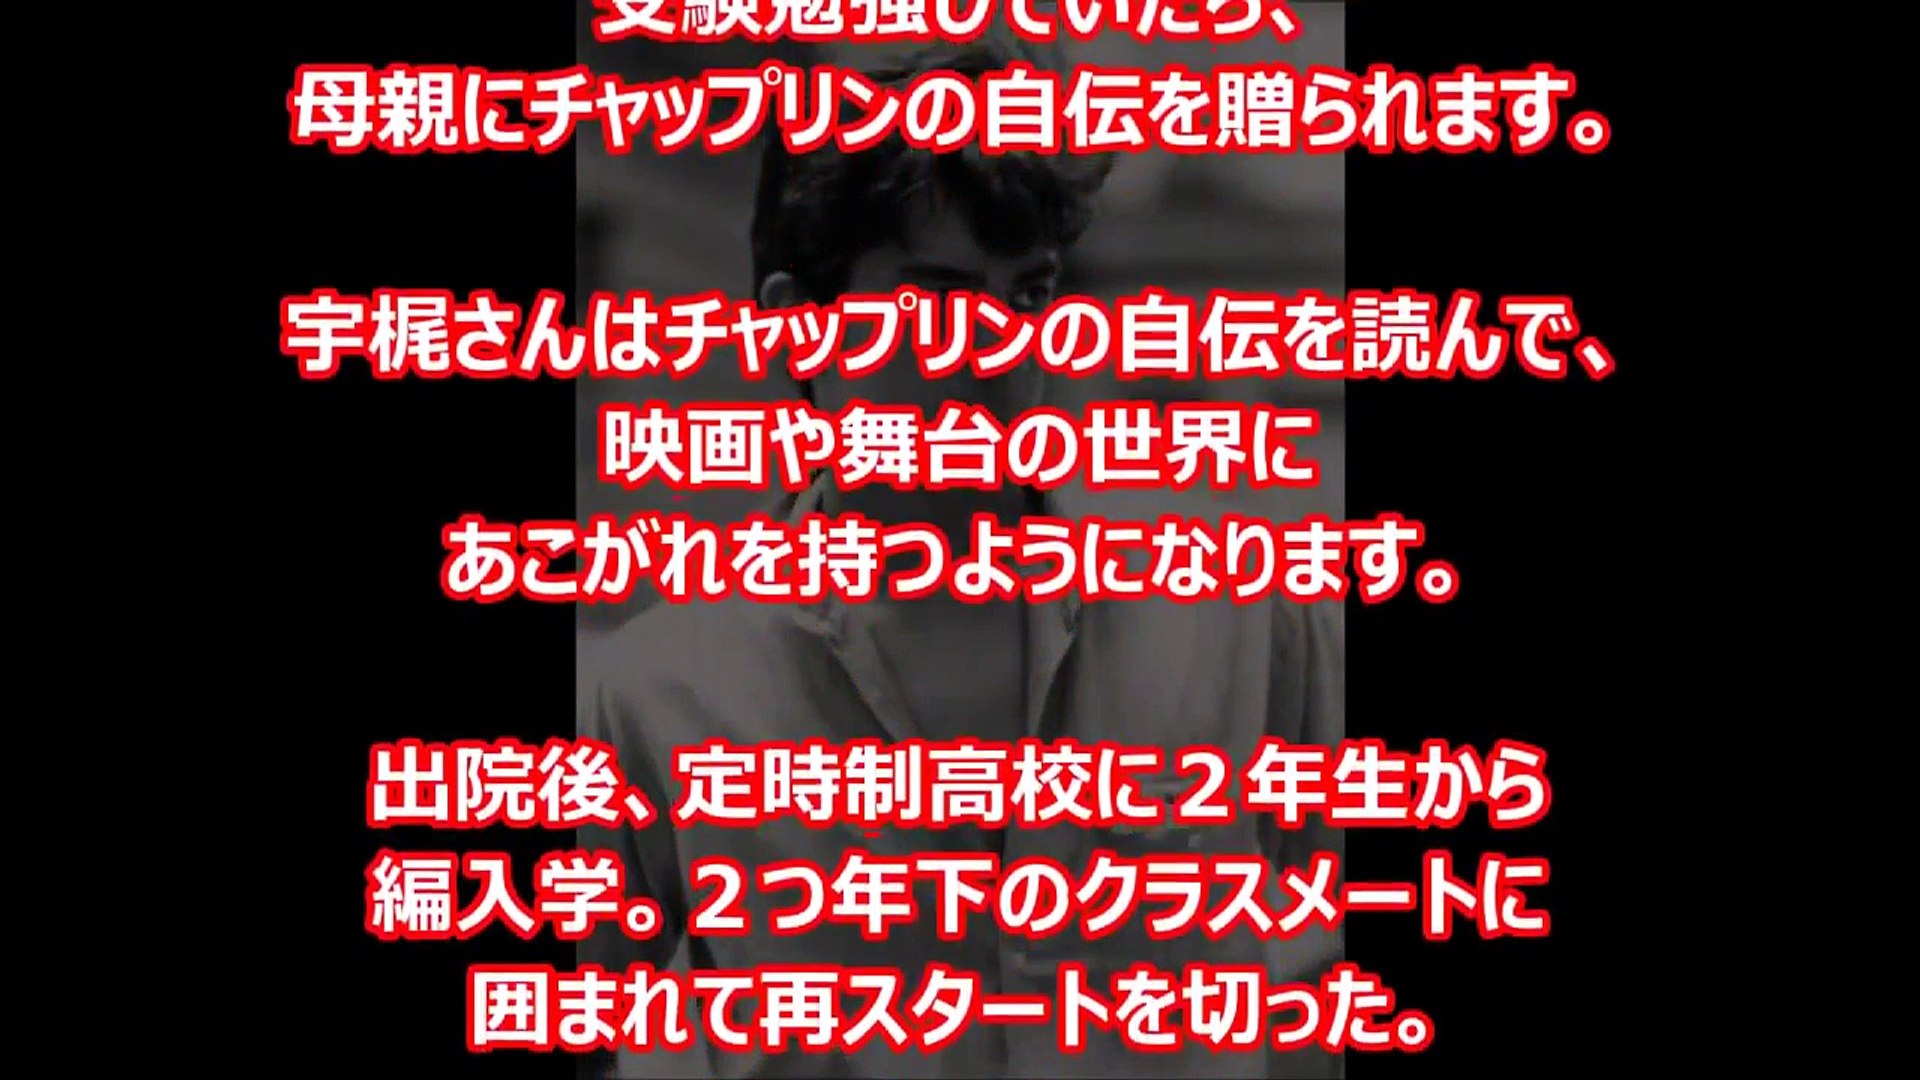 関東連合 ヒロミも恐れた ブラックエンペラー７代目総長宇梶剛士の壮絶な過去とは Video Dailymotion